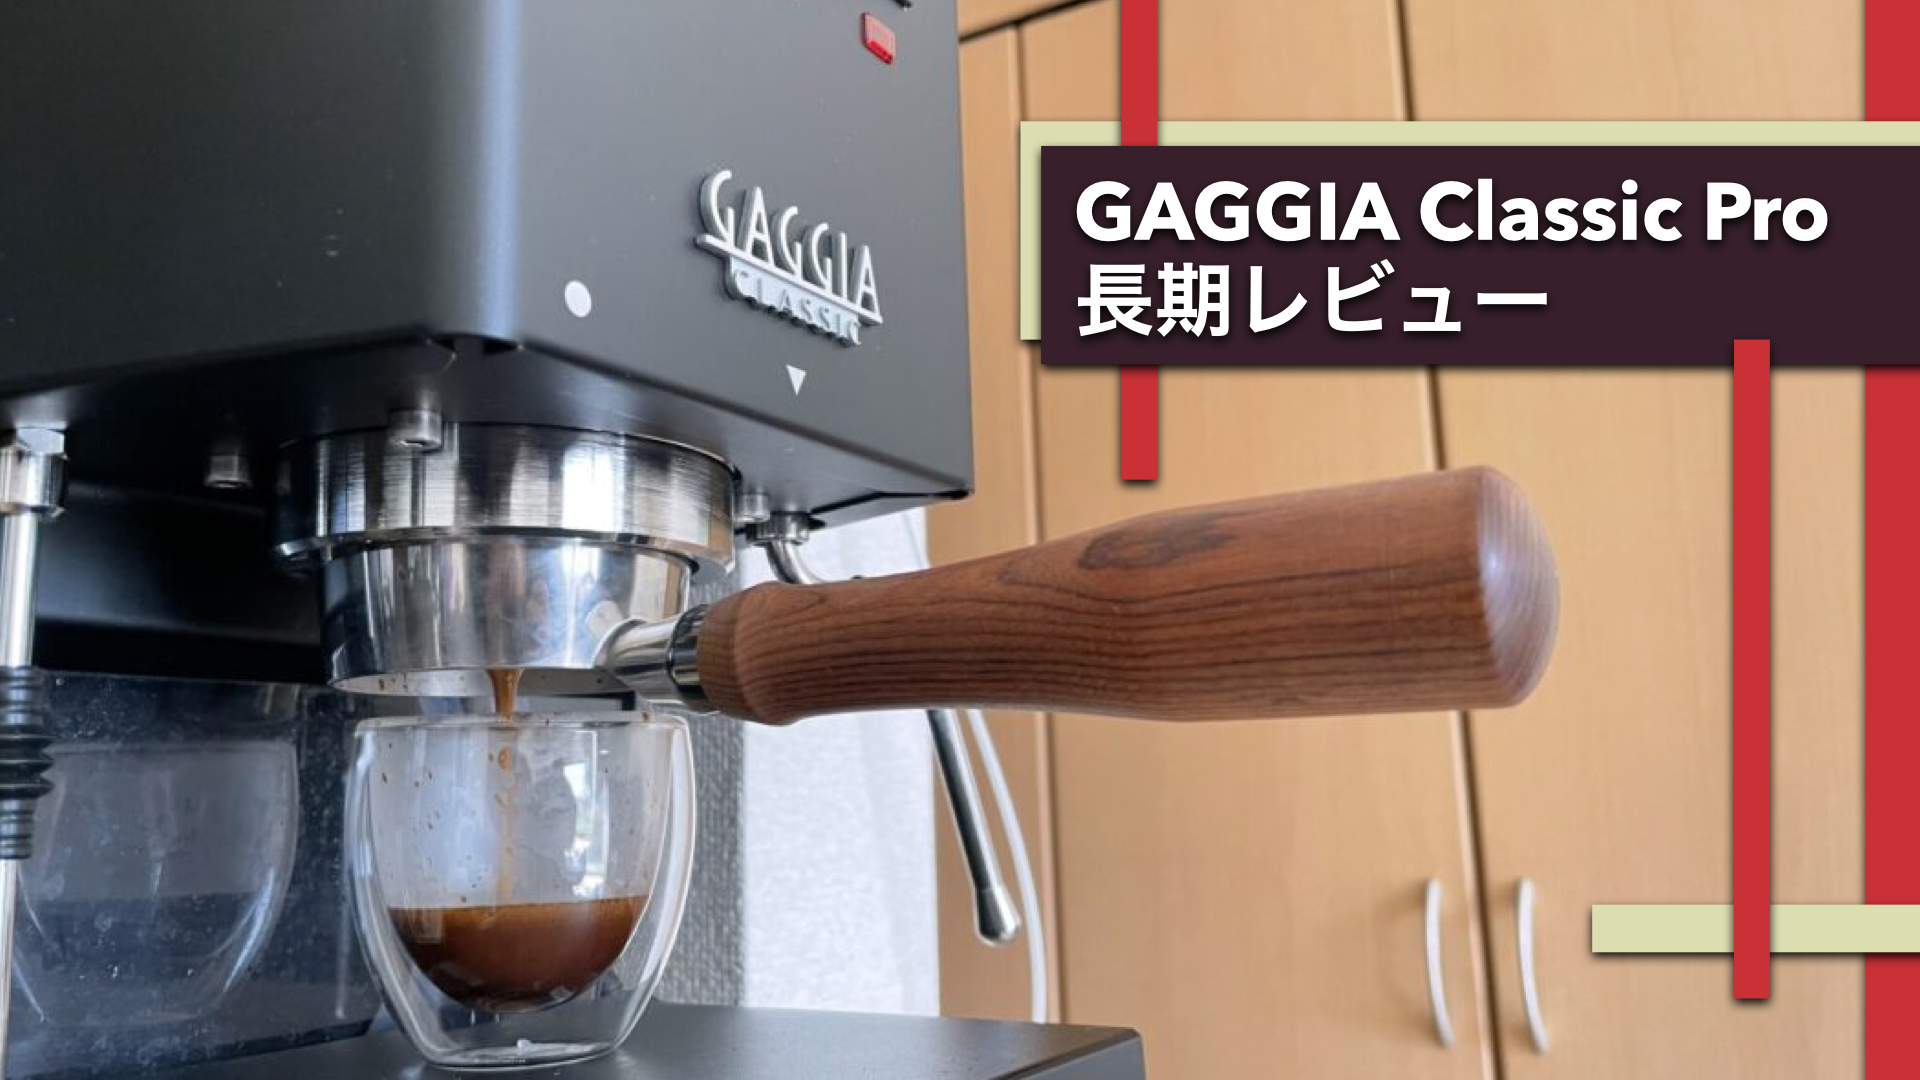 Gaggia Classic Pro レビュー【３ヶ月使ってみて】 | こもりコーヒー